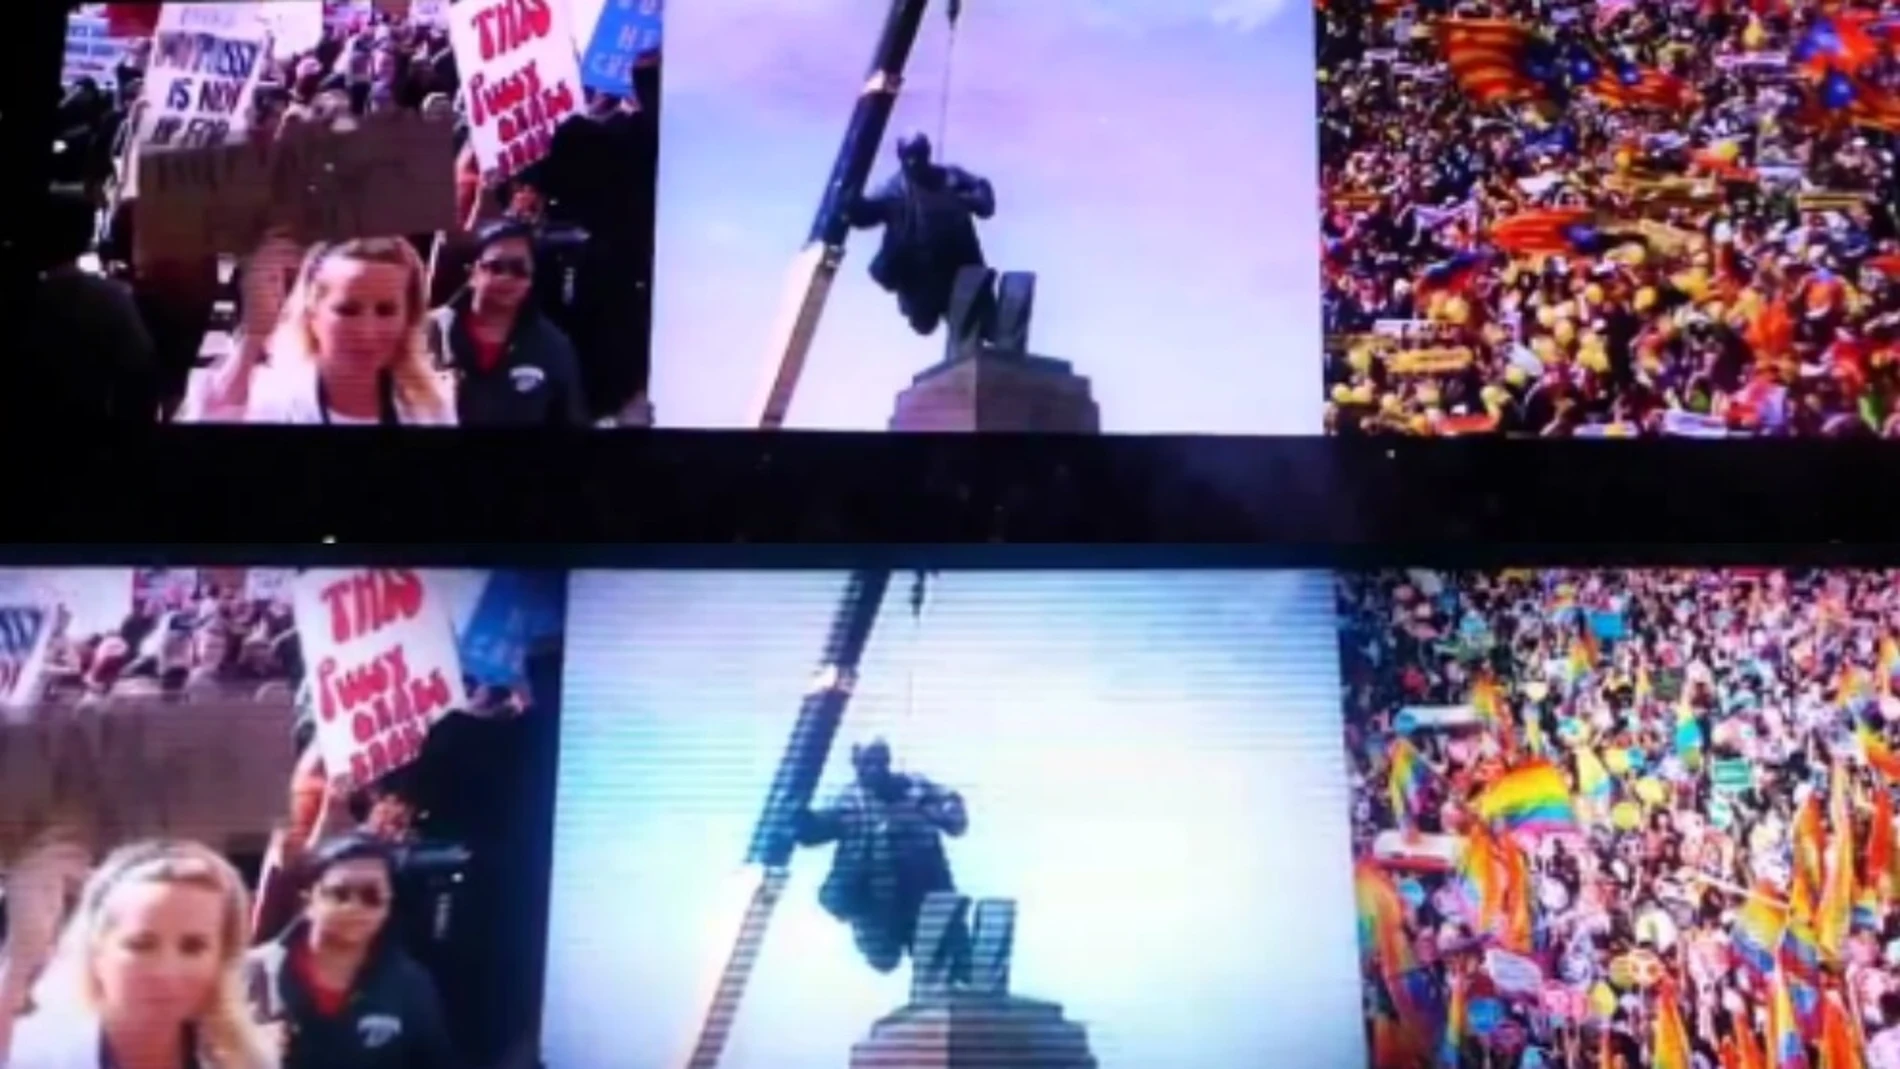 U2 sustituye las esteladas de su concierto en Berlín por la manifestación del Orgullo para su arranque de concierto en Madrid